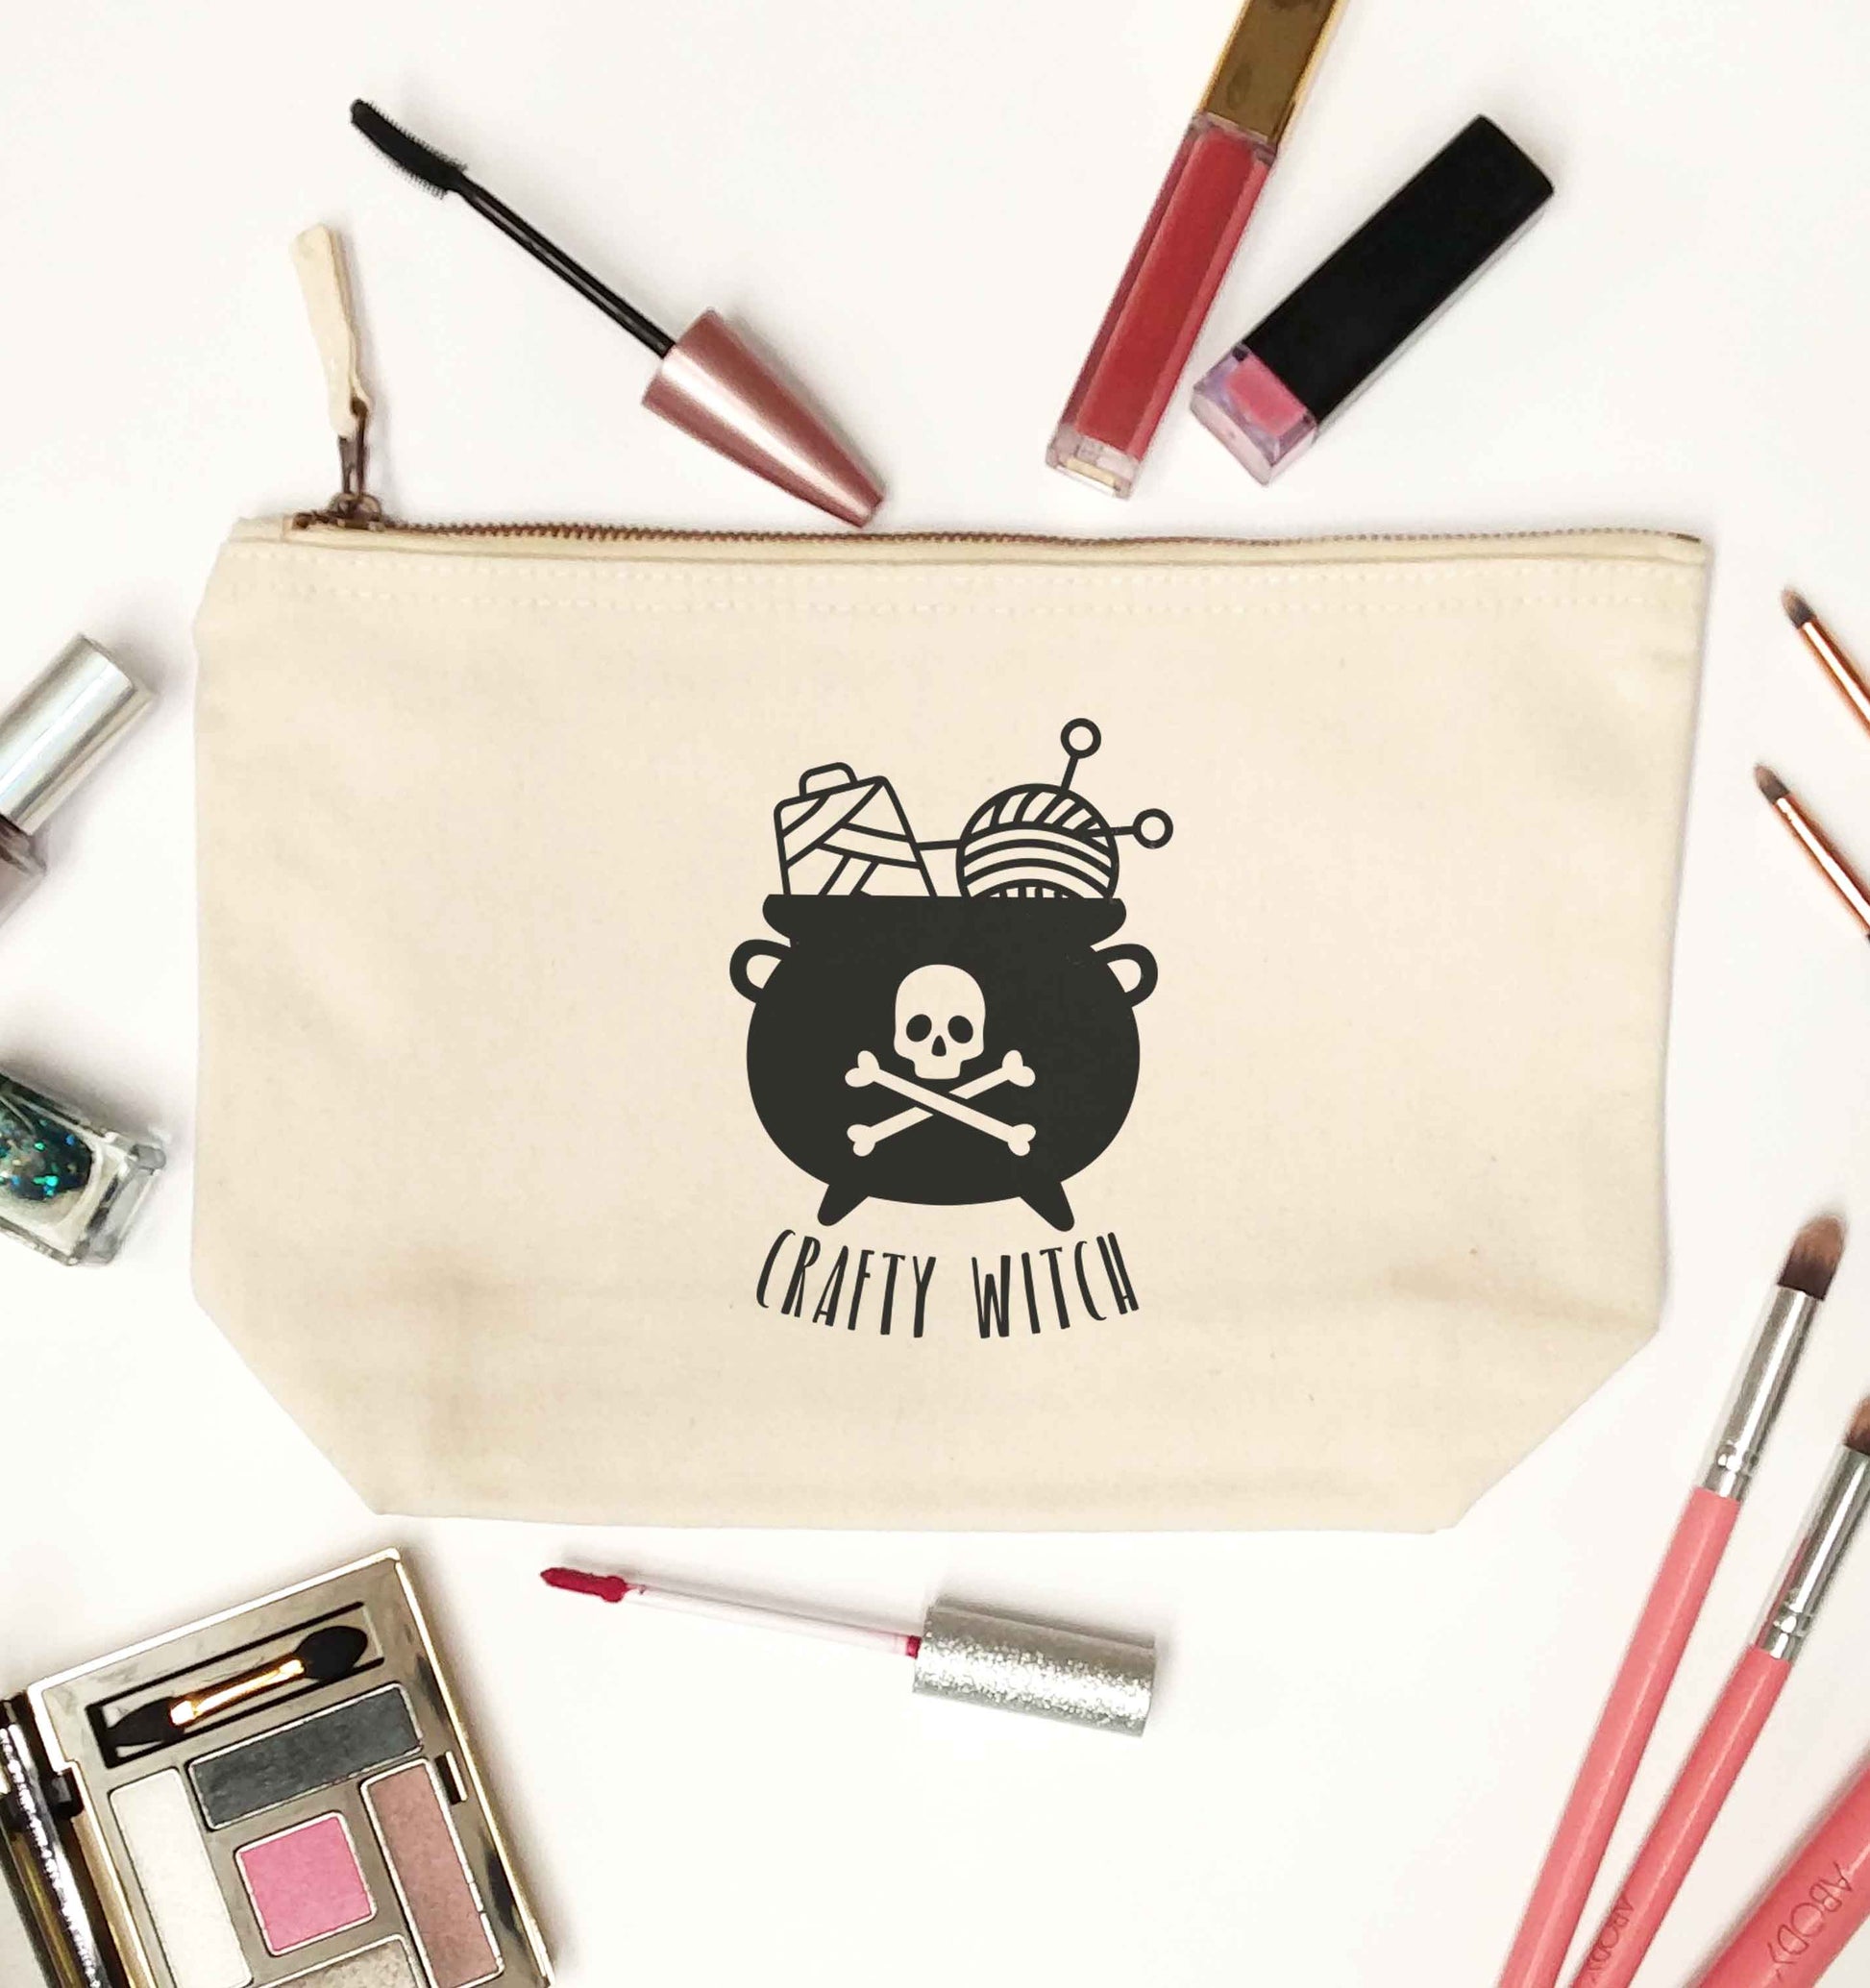 Crafty witch natural makeup bag